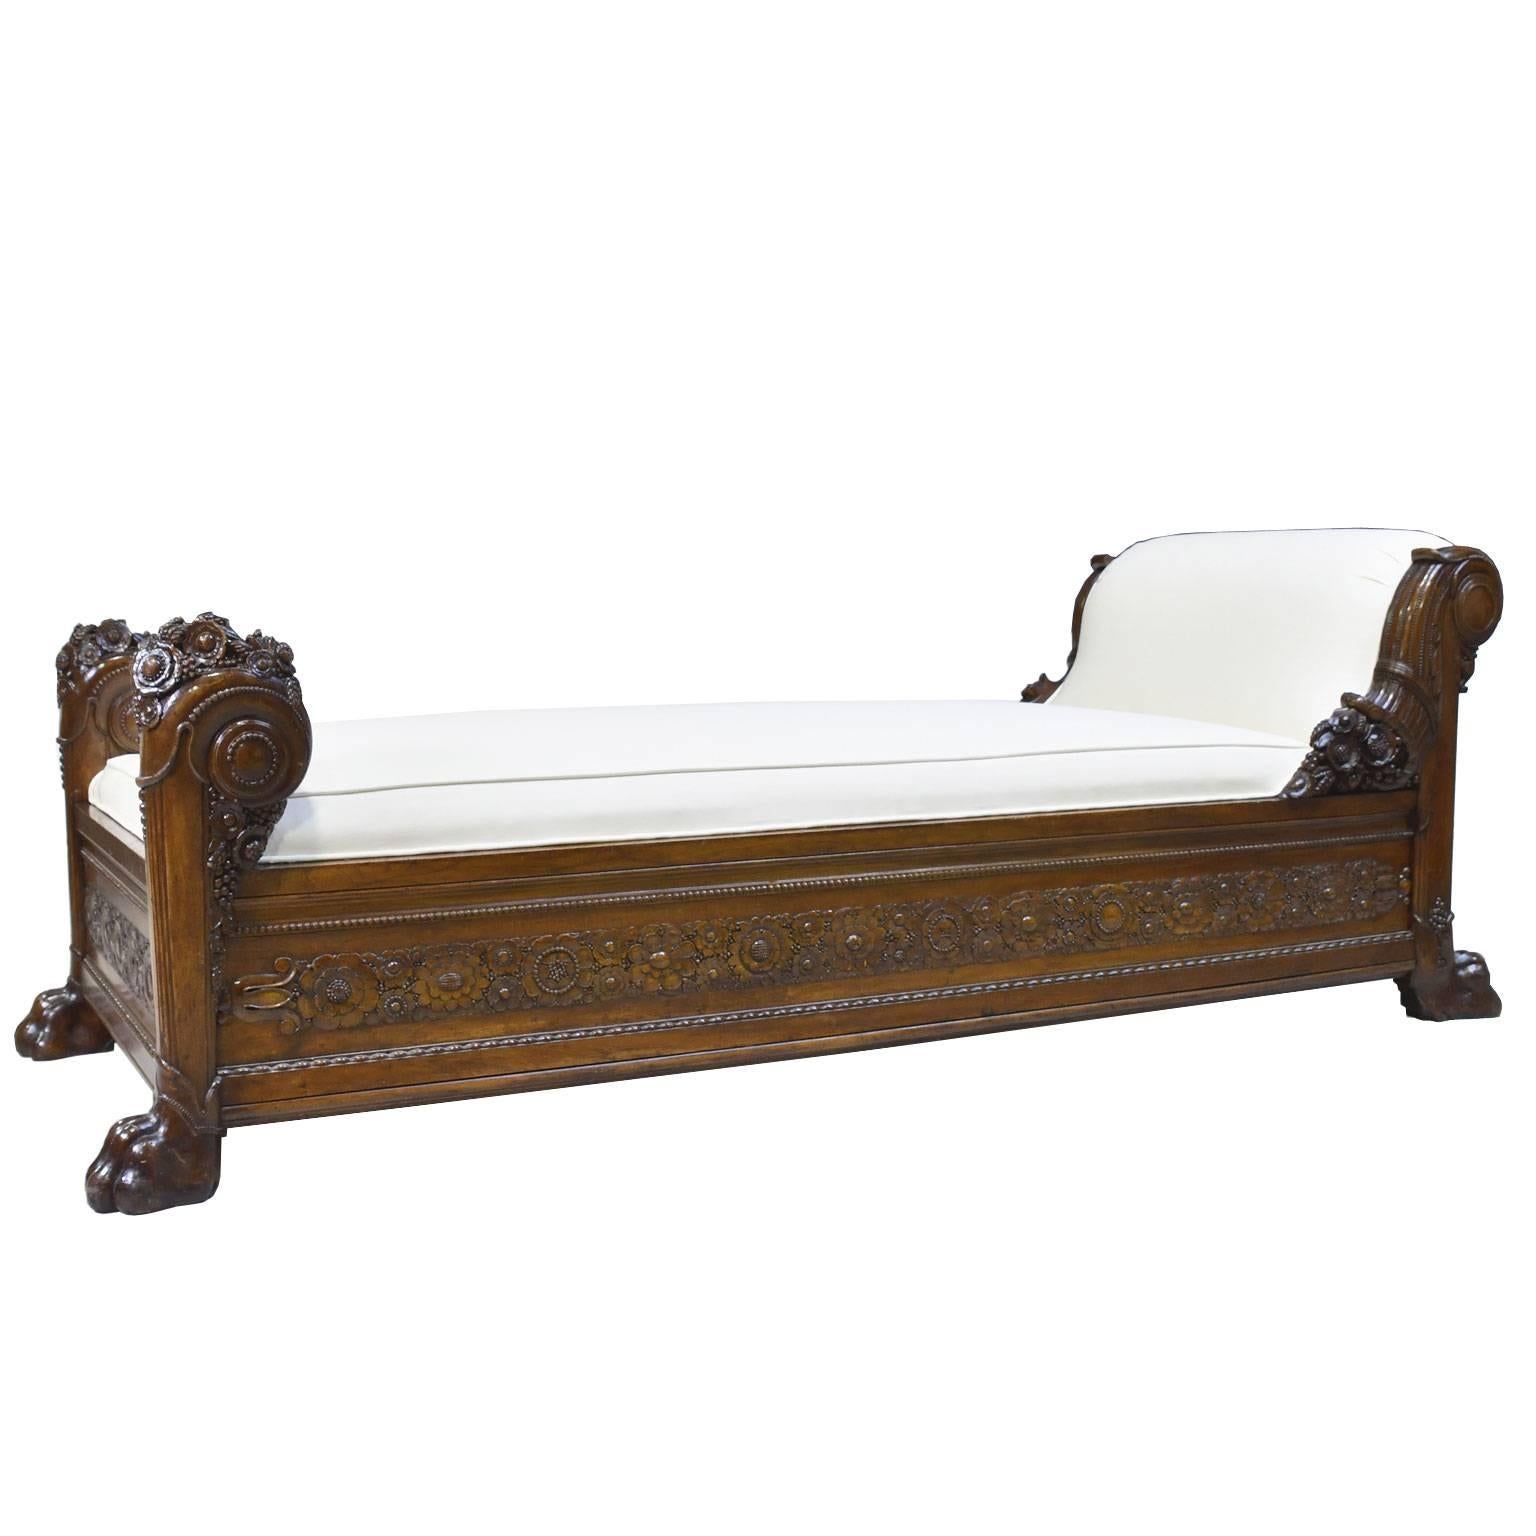 Französisches Directoire-Tagesbett aus geschnitztem Mahagoni mit Polsterung aus dem späten 18. Jahrhundert (Handgeschnitzt)